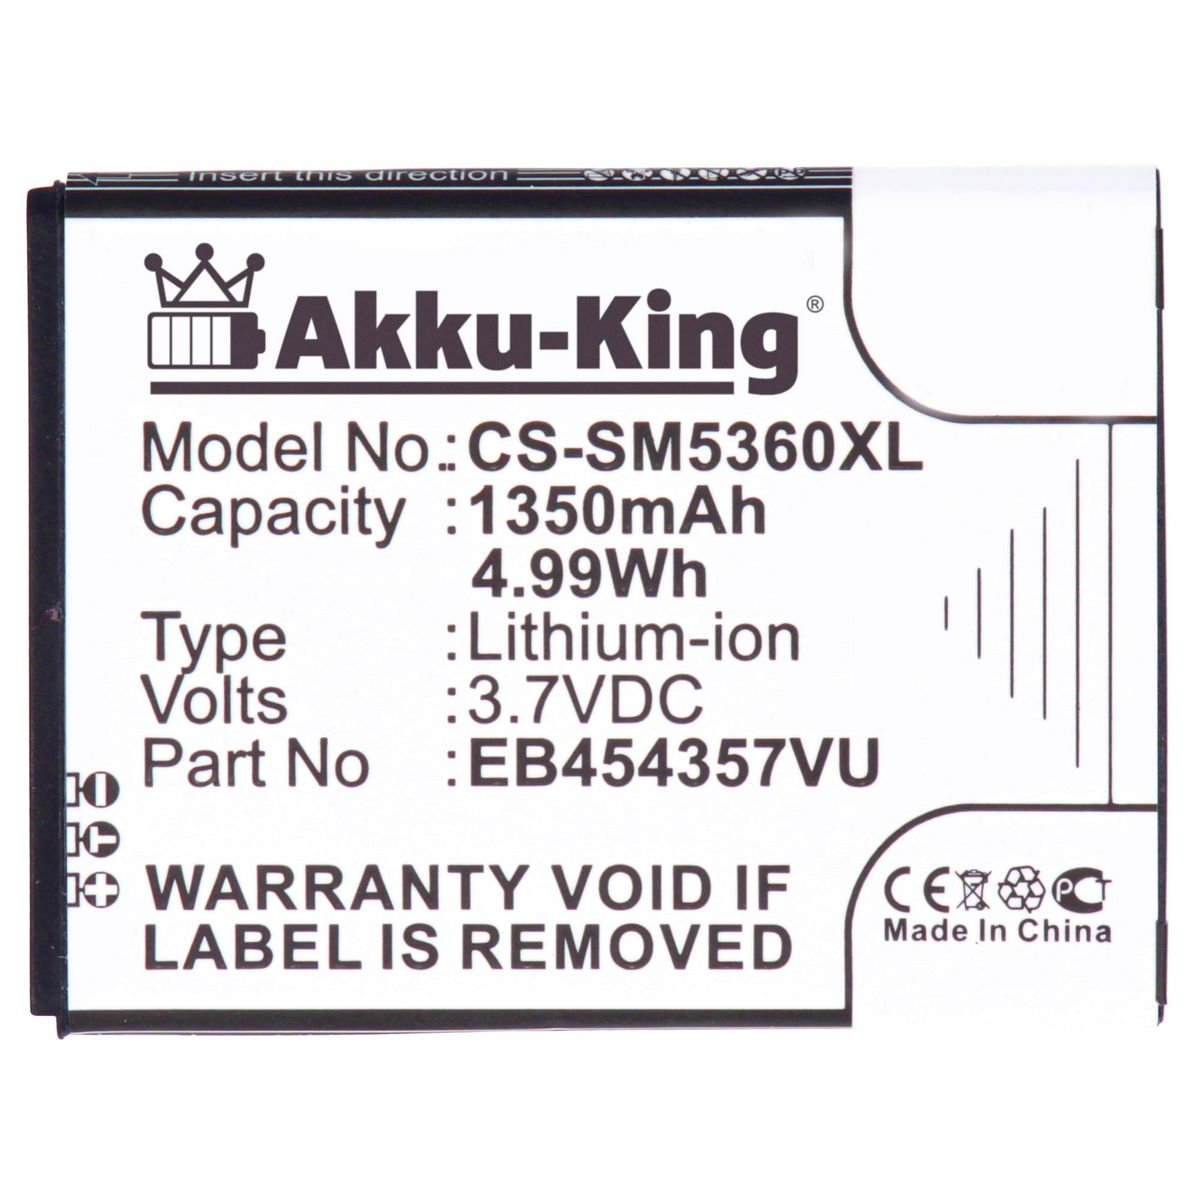 AKKU-KING Akku kompatibel mit Samsung Li-Ion 3.7 1350mAh Handy-Akku, EB454357VU Volt